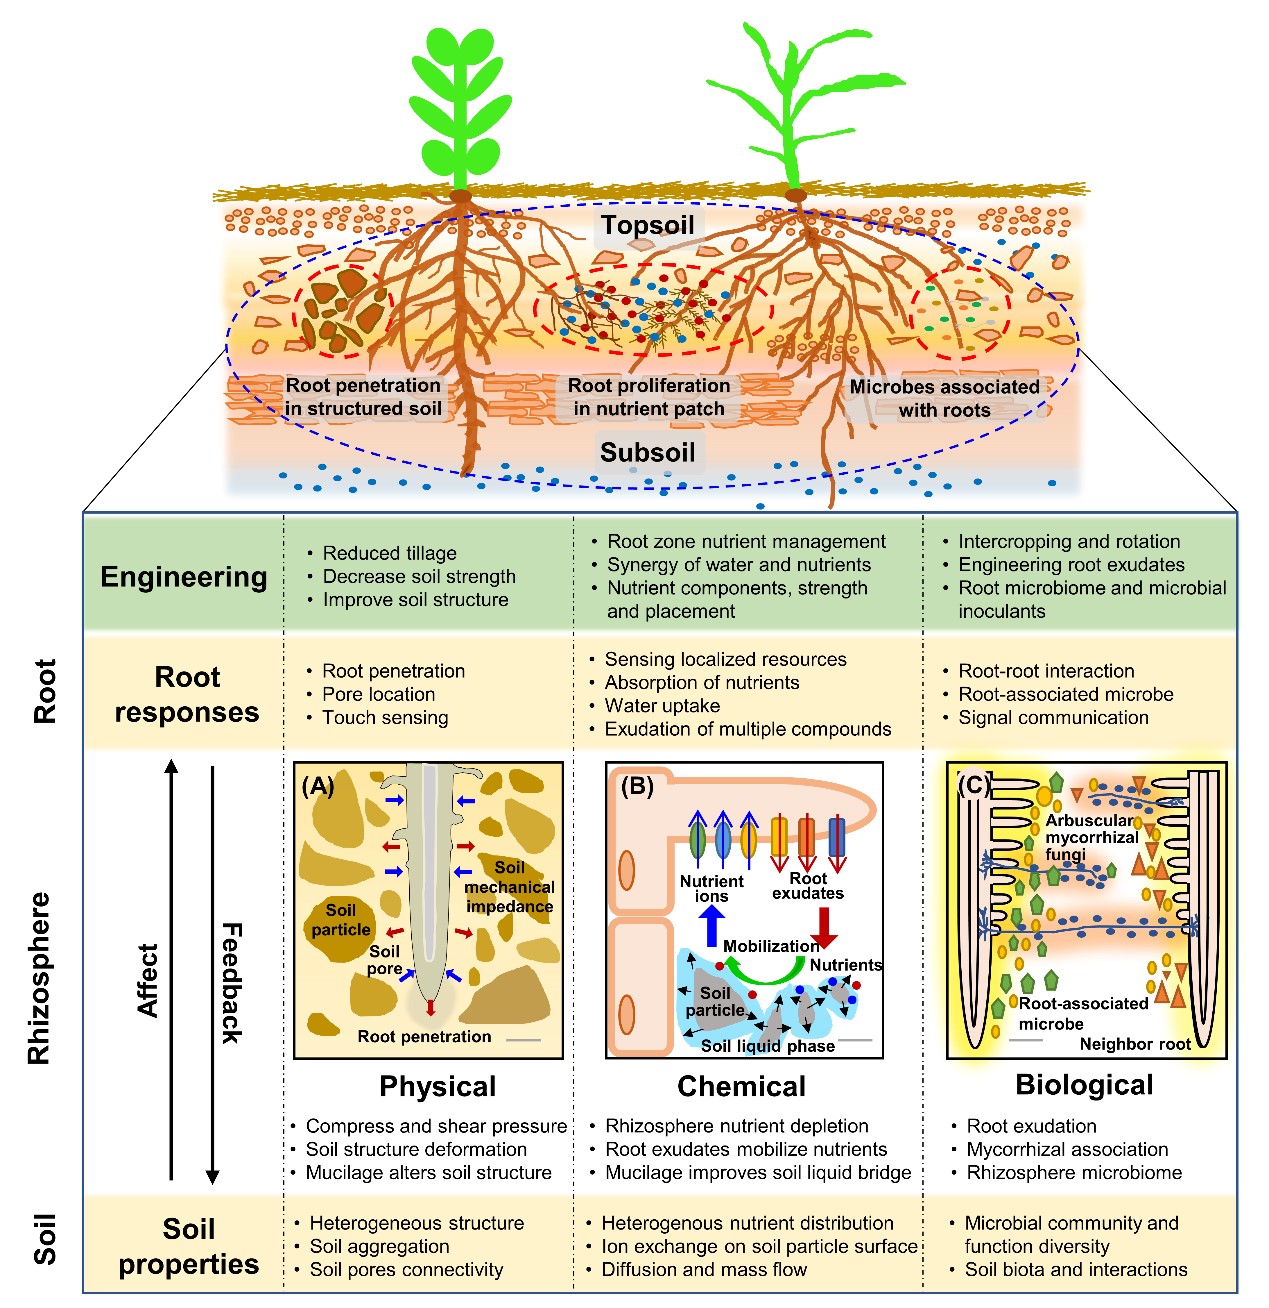 土壤微生物与有机肥团队揭示了玉米种栖微生物垂直传递参与根际微生物组装配的功能补偿机制-南京农业大学资源与环境科学学院